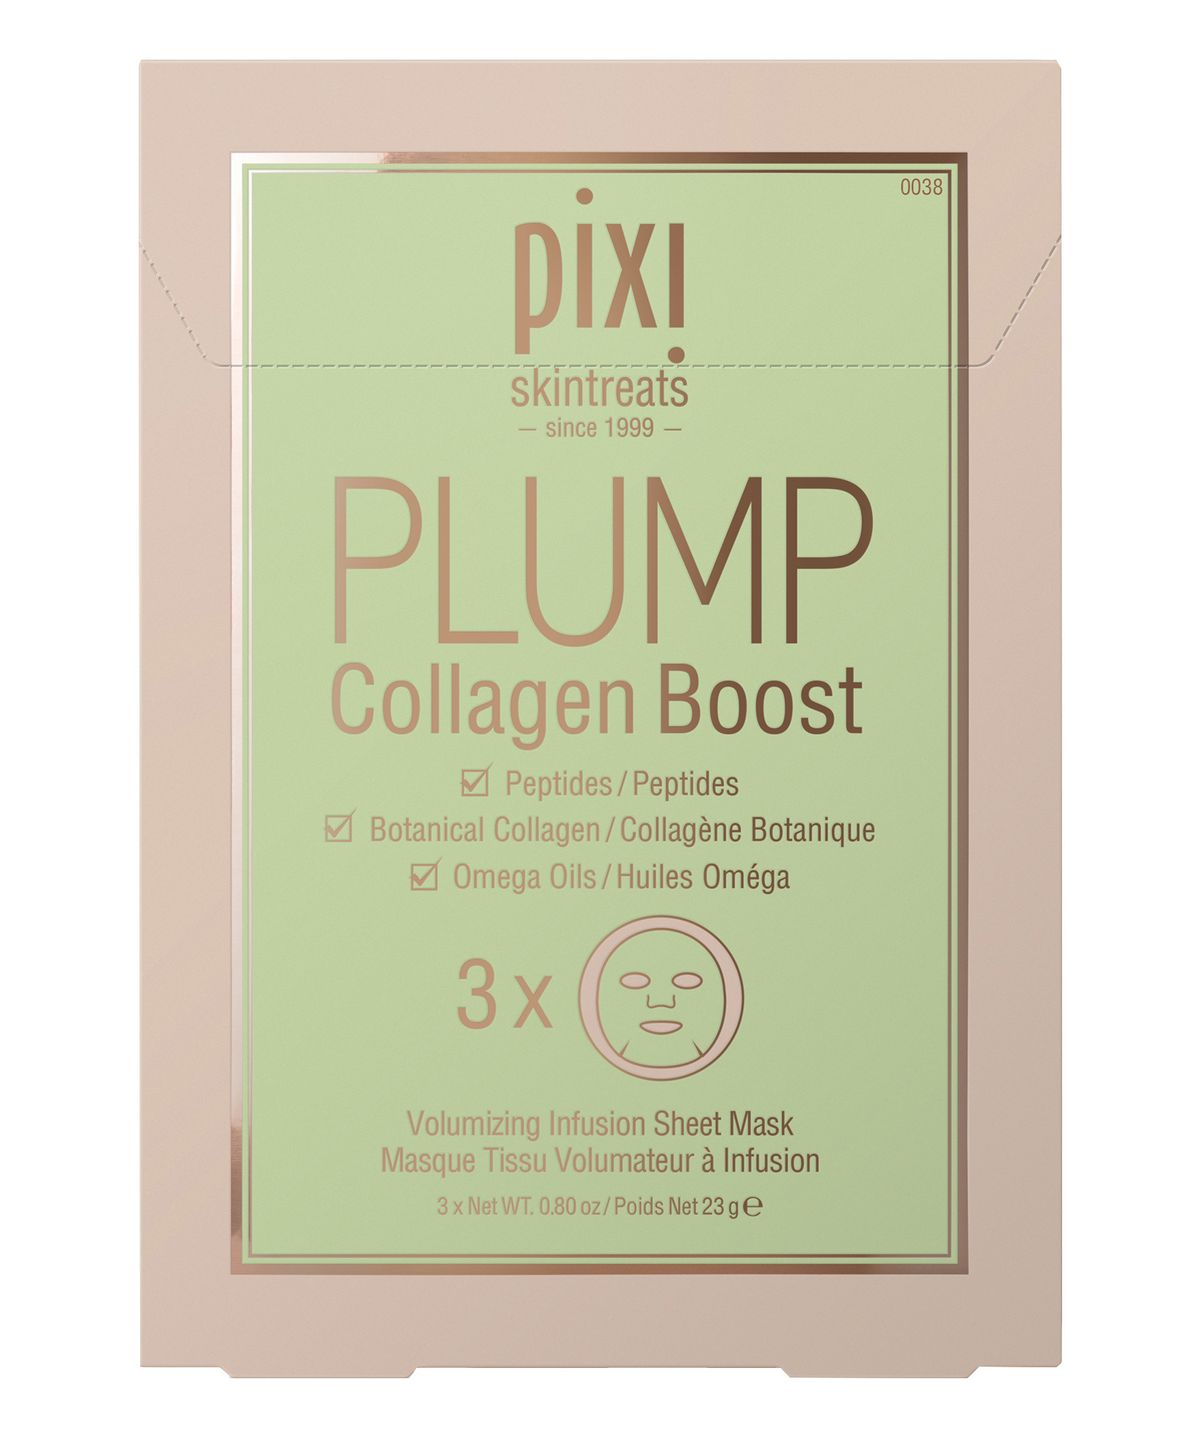 Pixi Plump Collagen Boost (4761606258735)